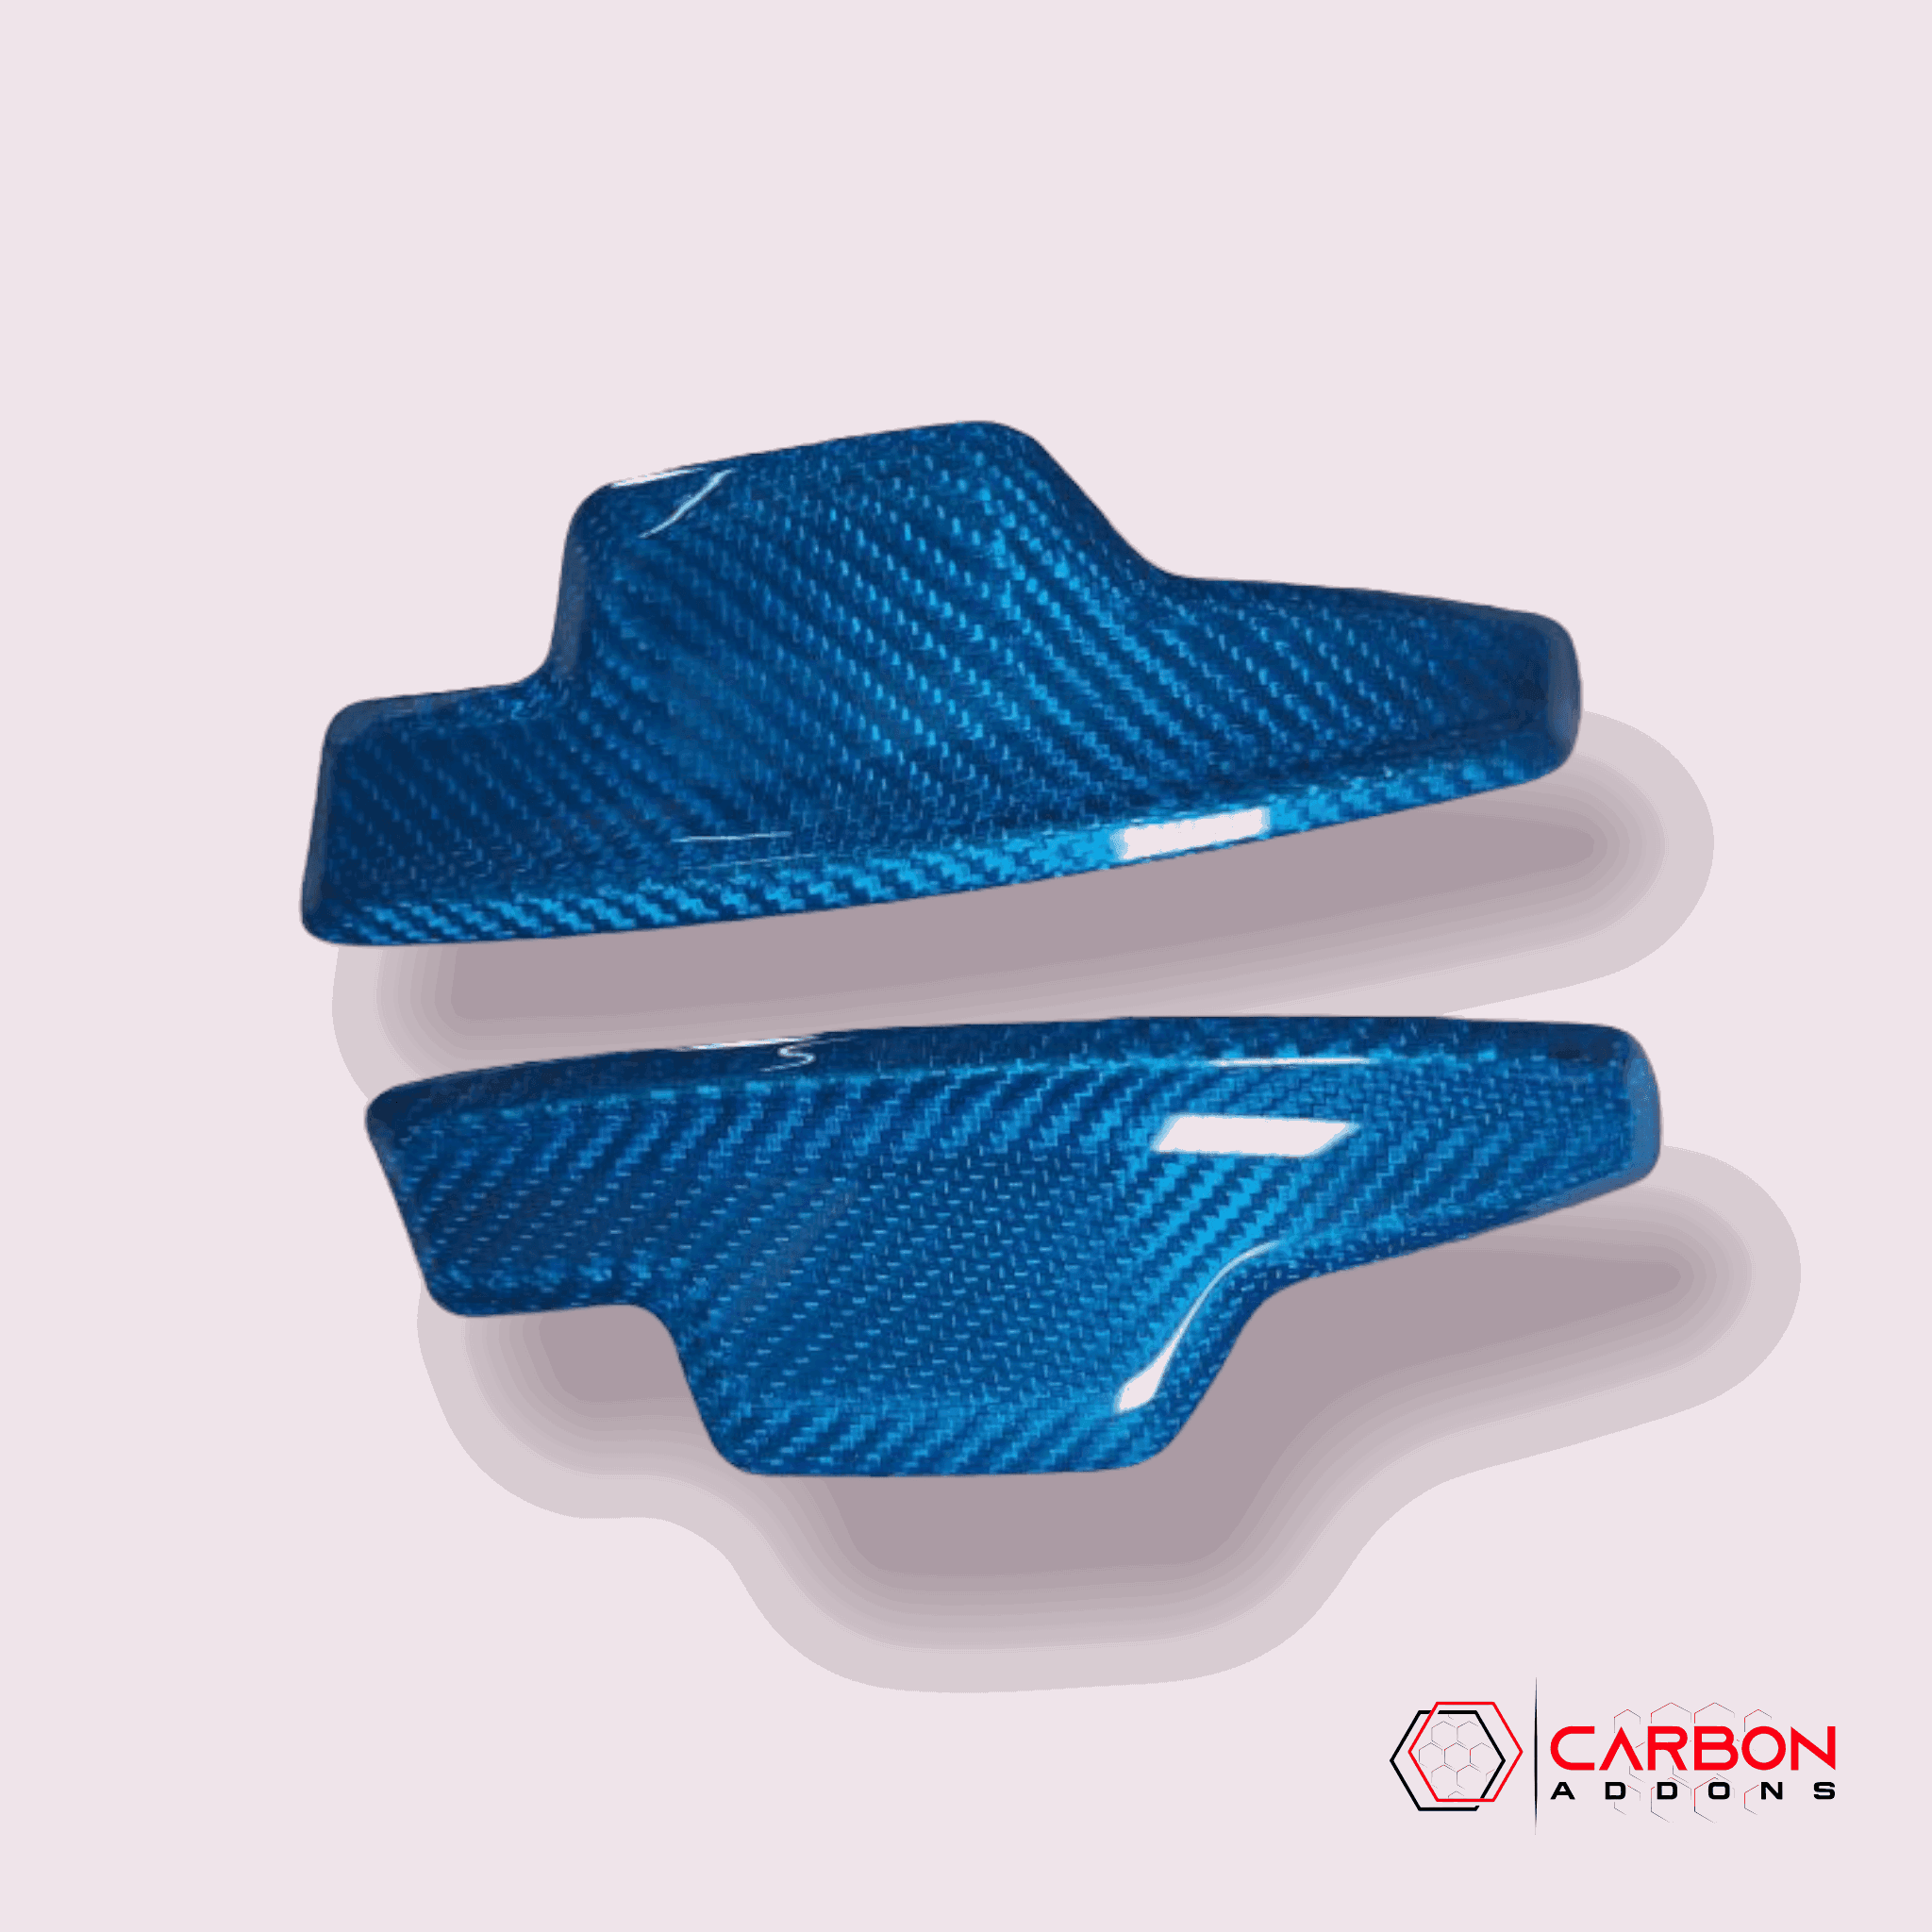 C8 CORVETTE CARBON FIBER PADDLE SHIFTER | DIRECT REPLACEMENT - carbonaddons Carbon Fiber Parts, Accessories, Upgrades, Mods